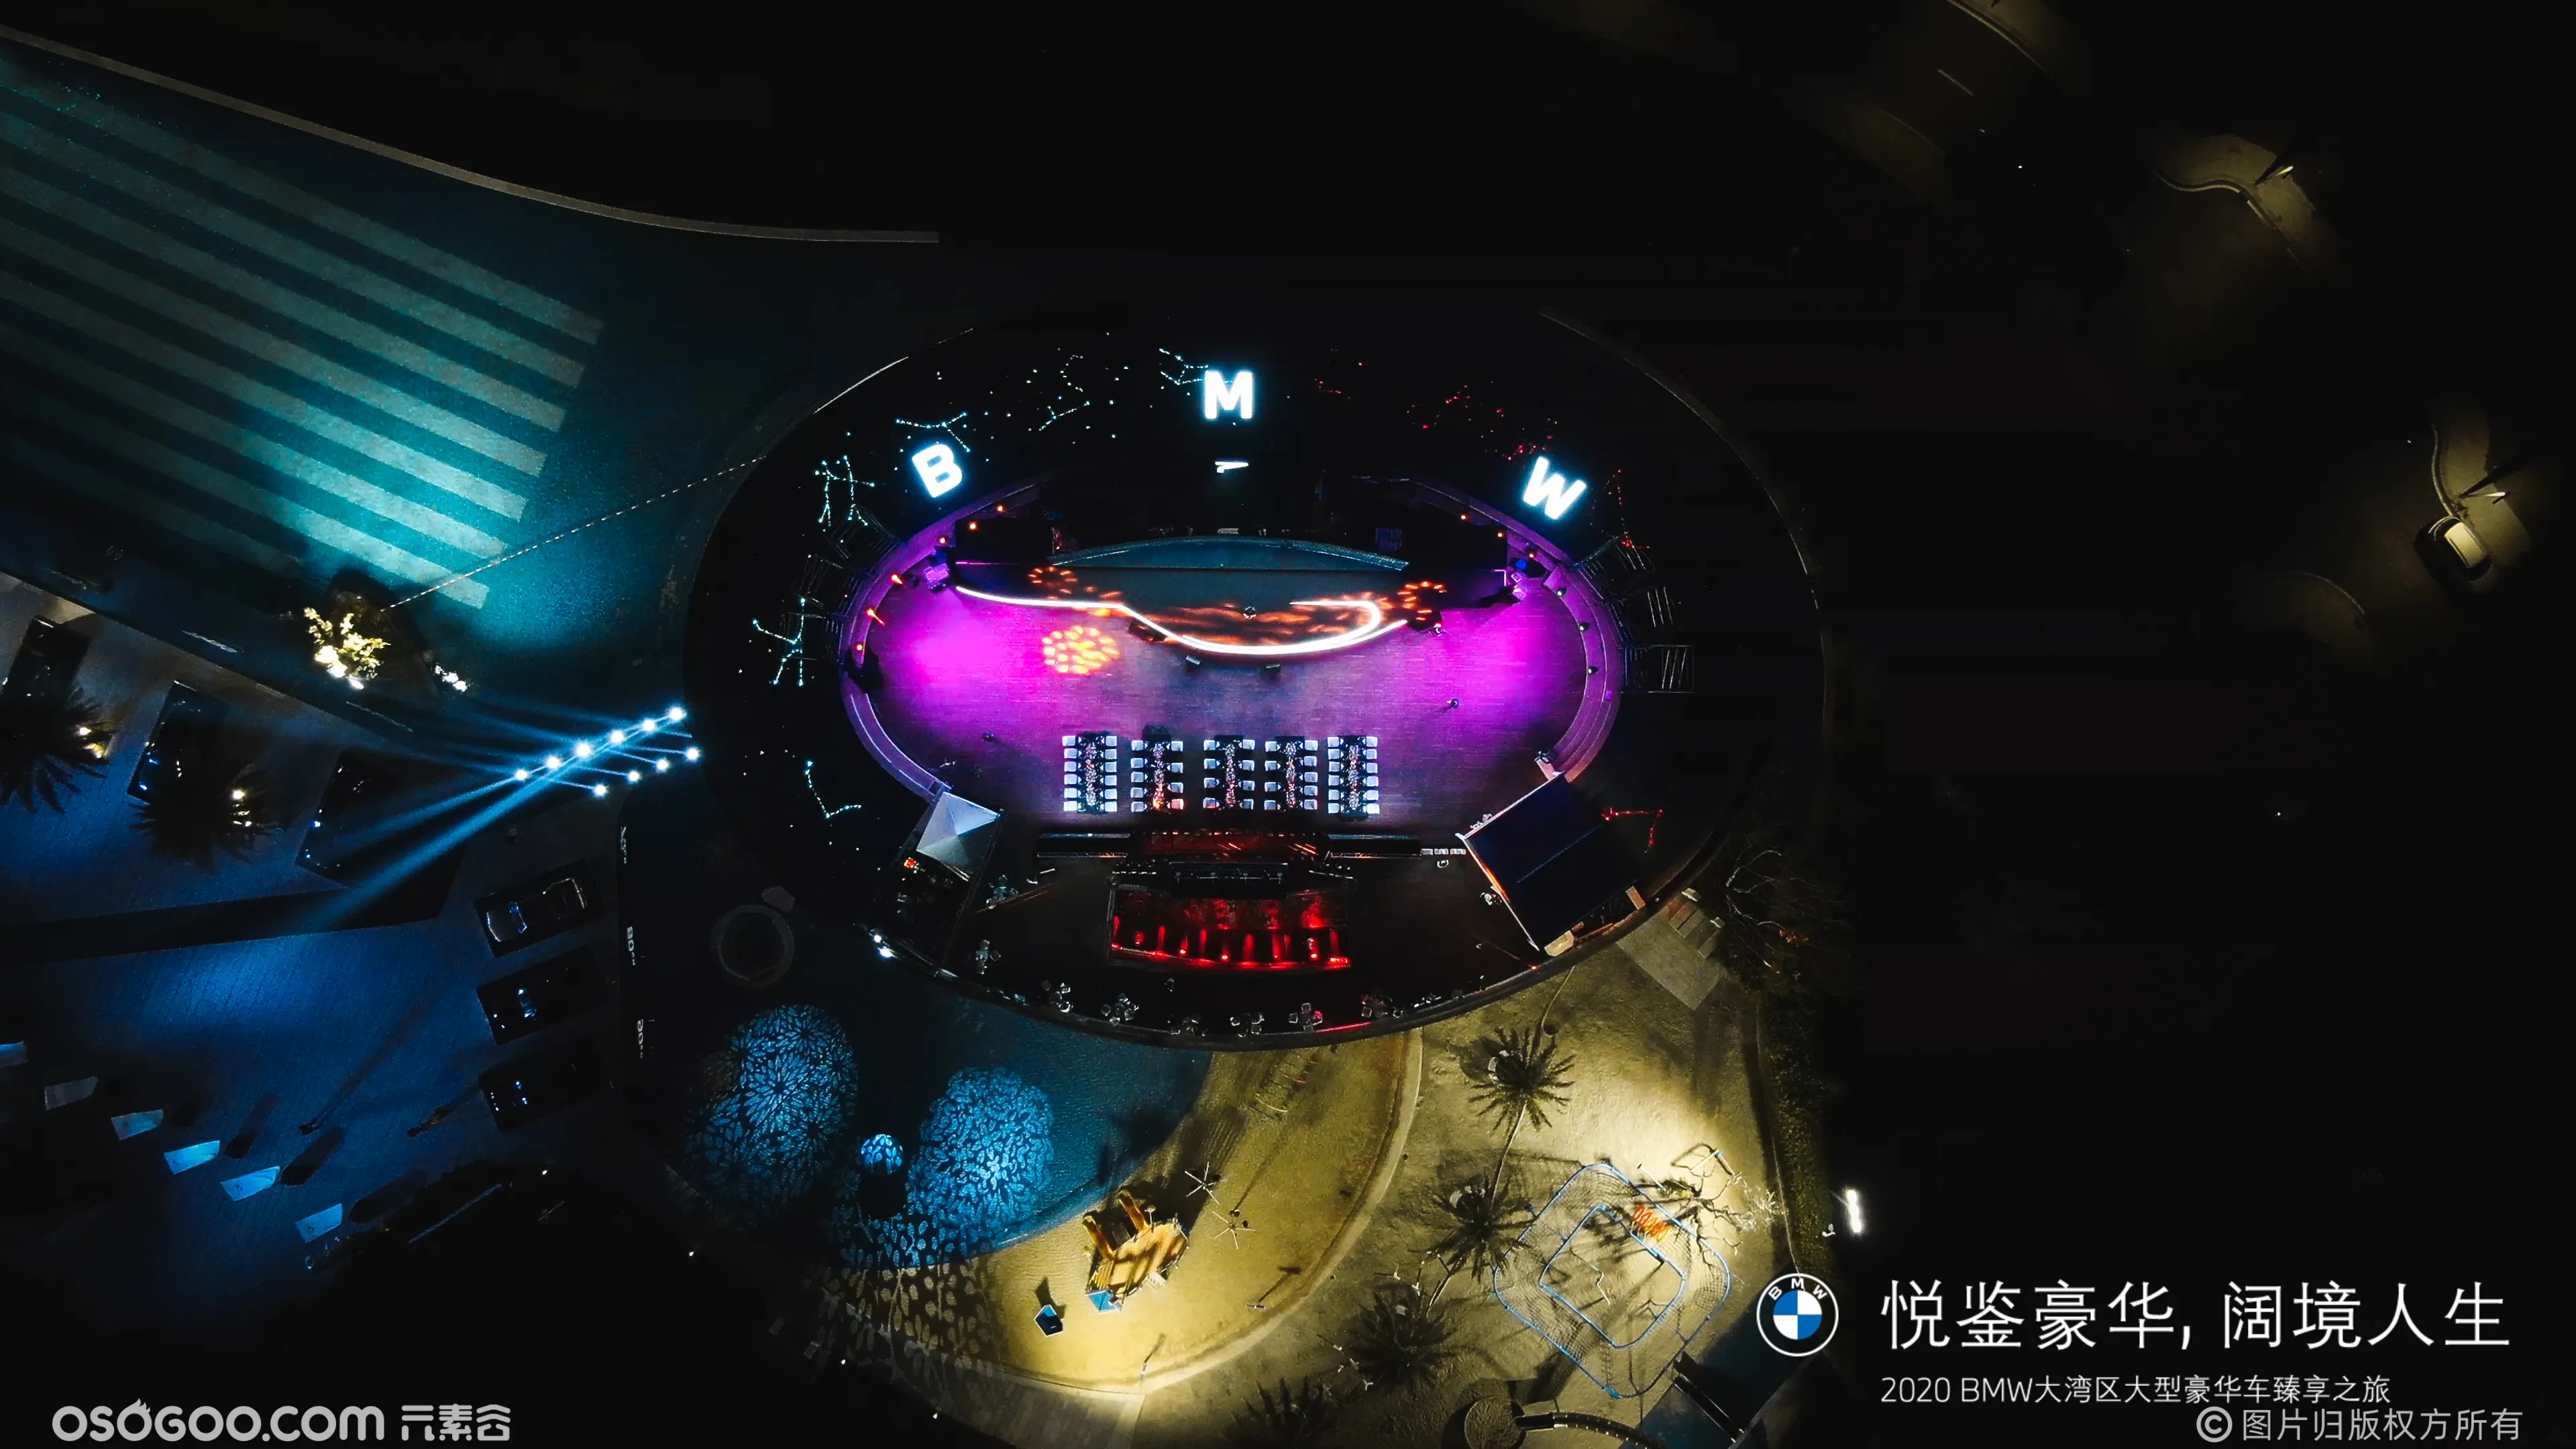 2020BMW惠州UFO无边泳池晚宴